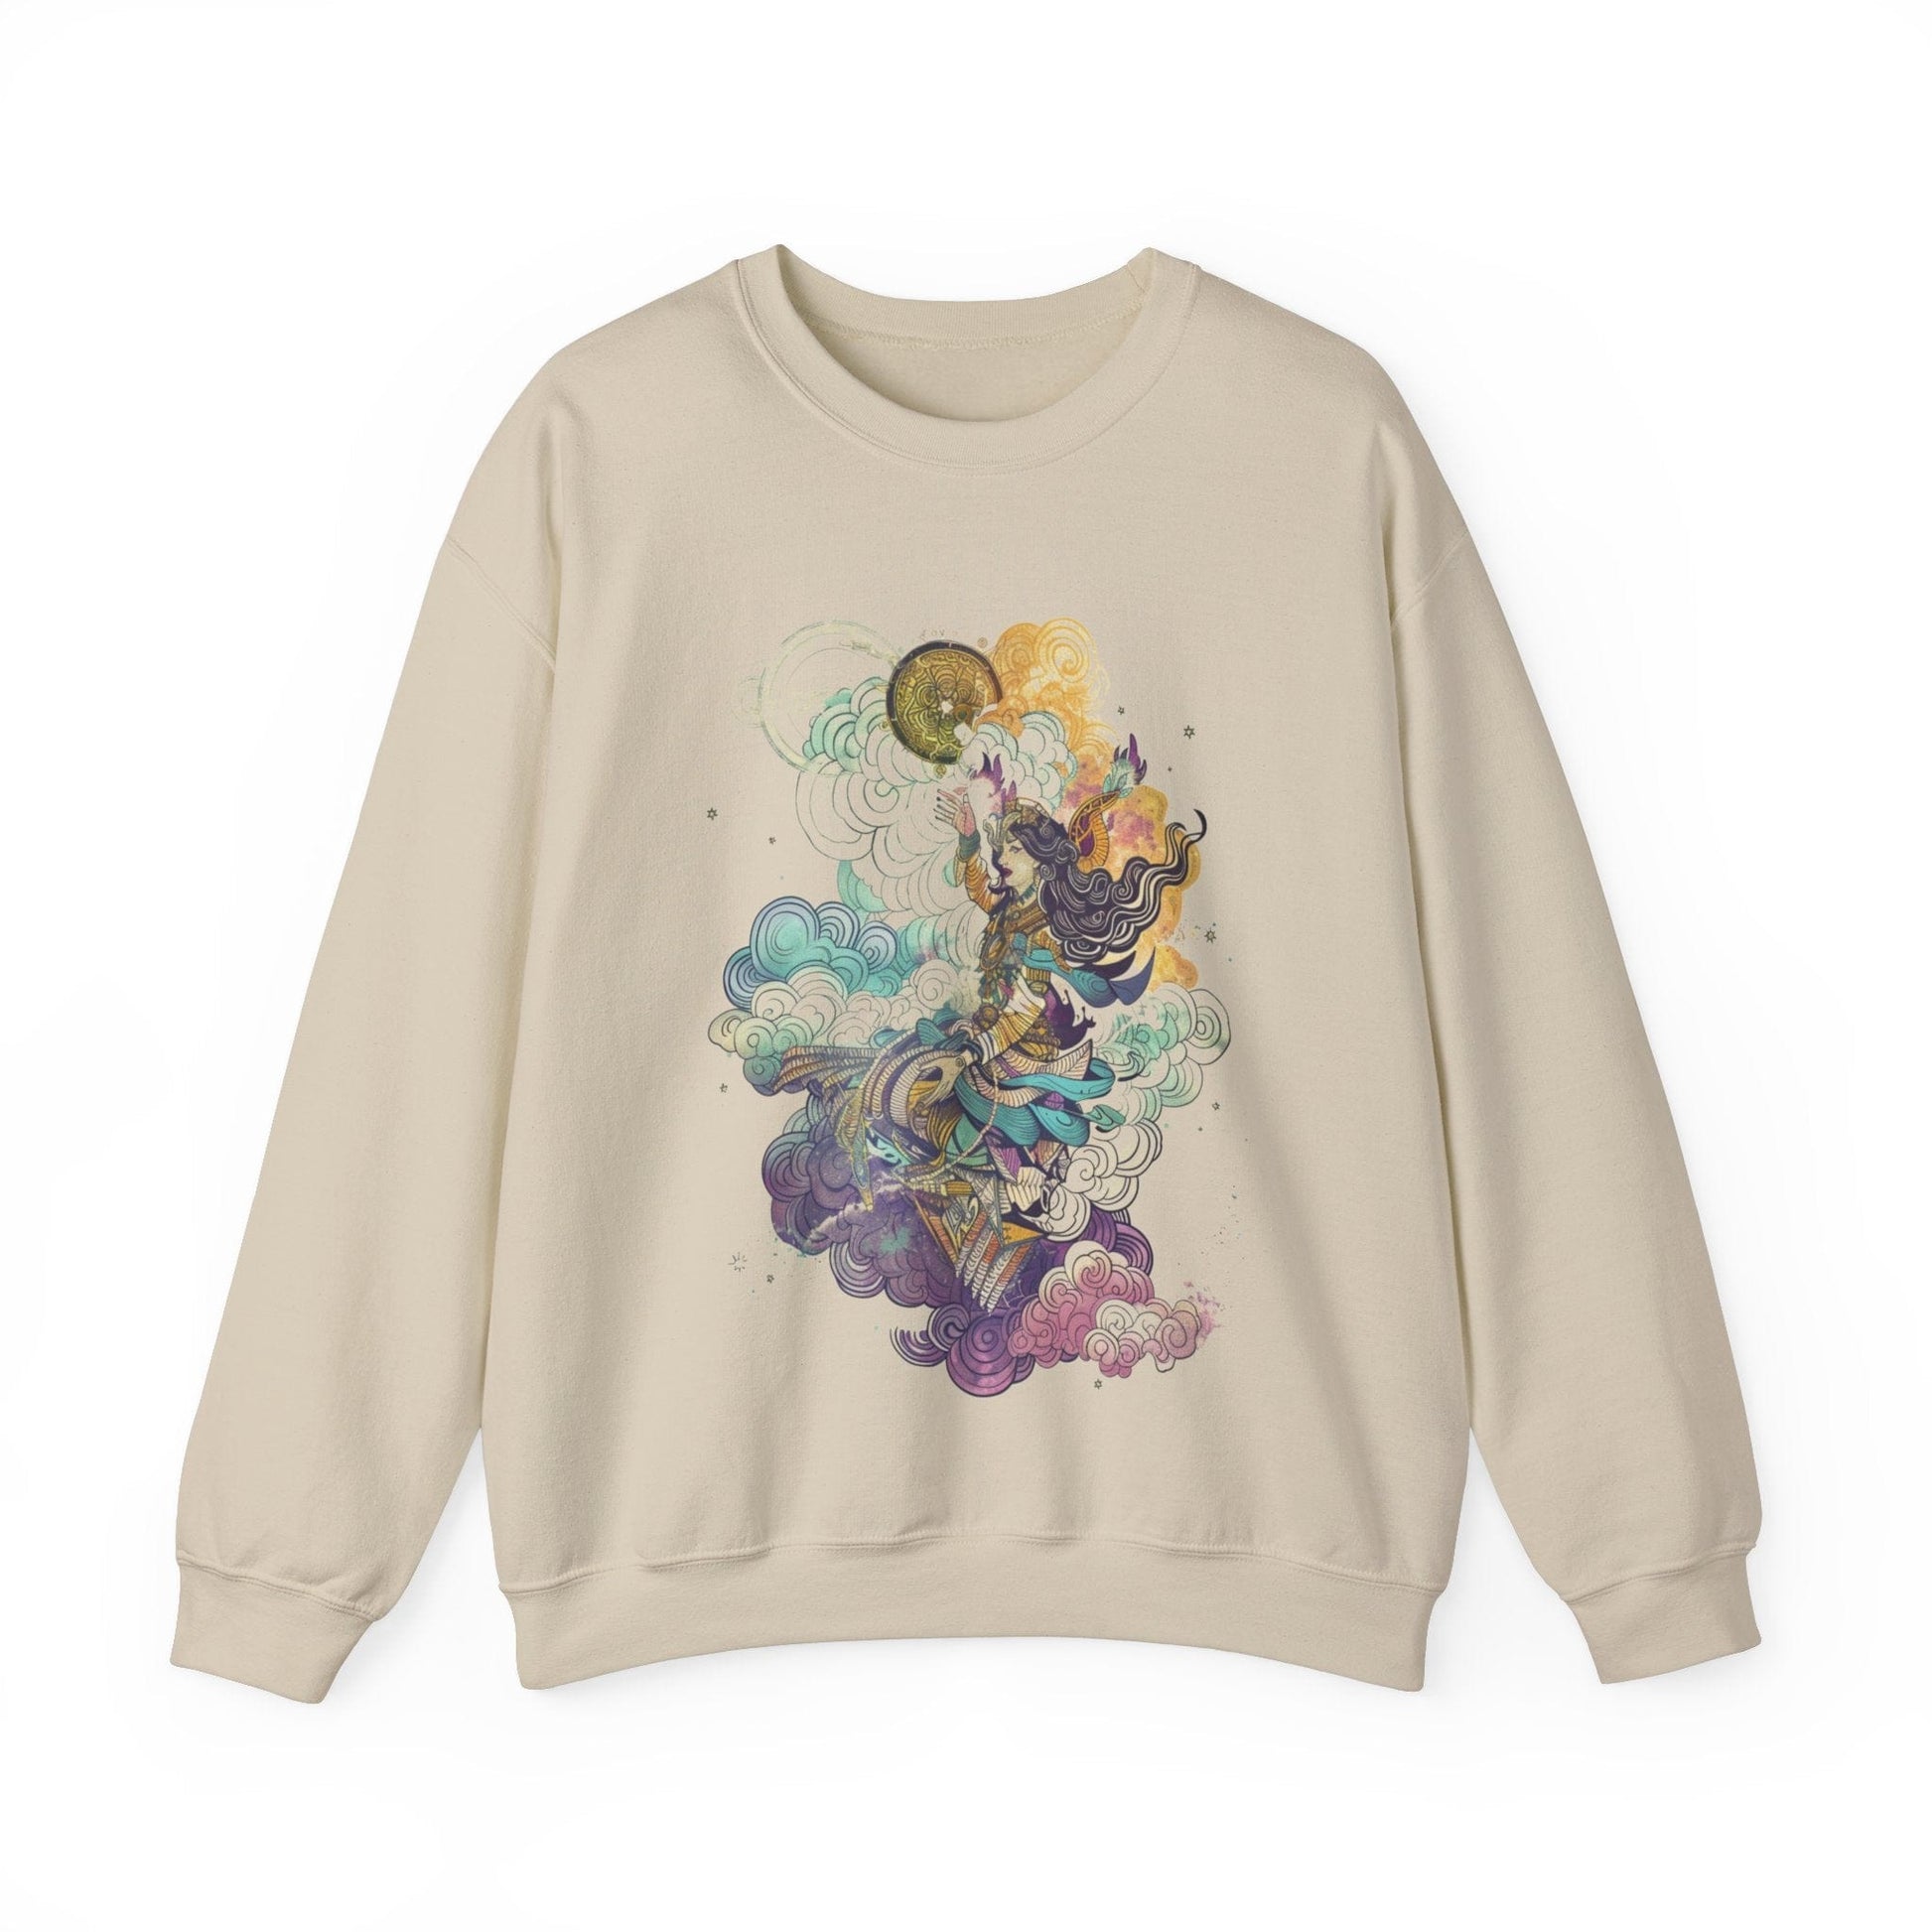 Sweatshirt S / Sand Astrological Elegance Sweater: Cosmic Grace Unfolds